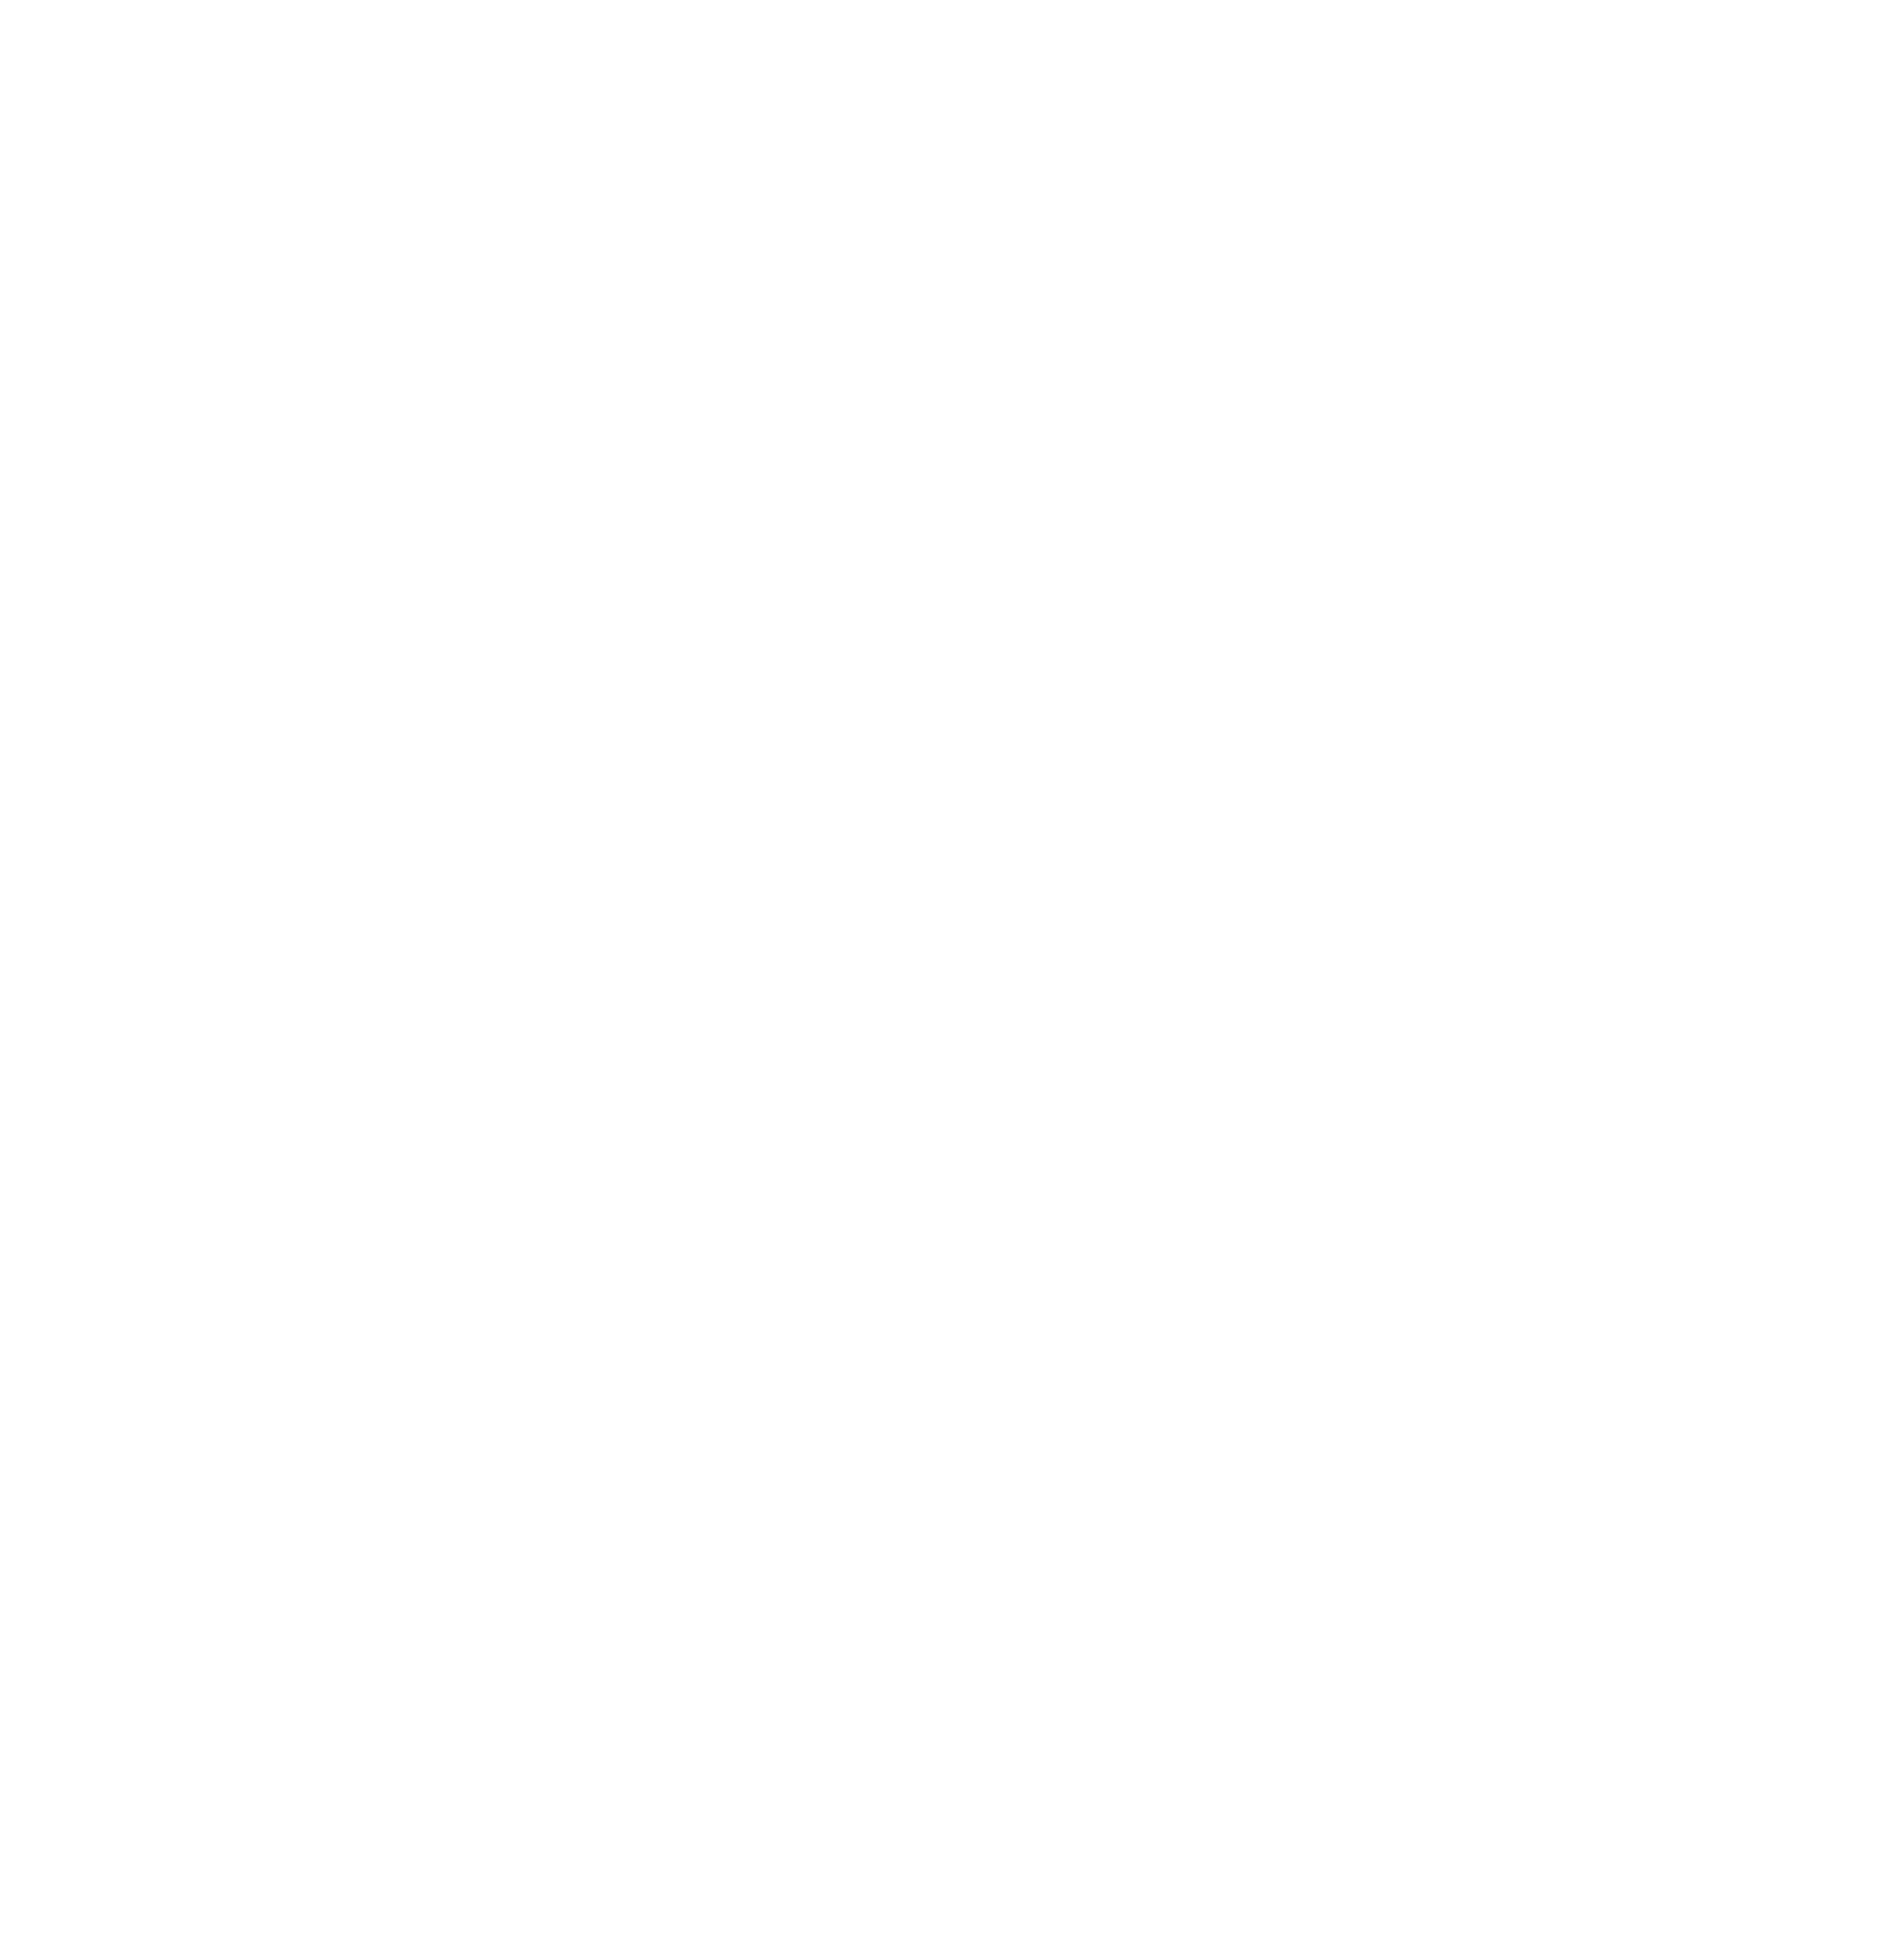 The Gallerio